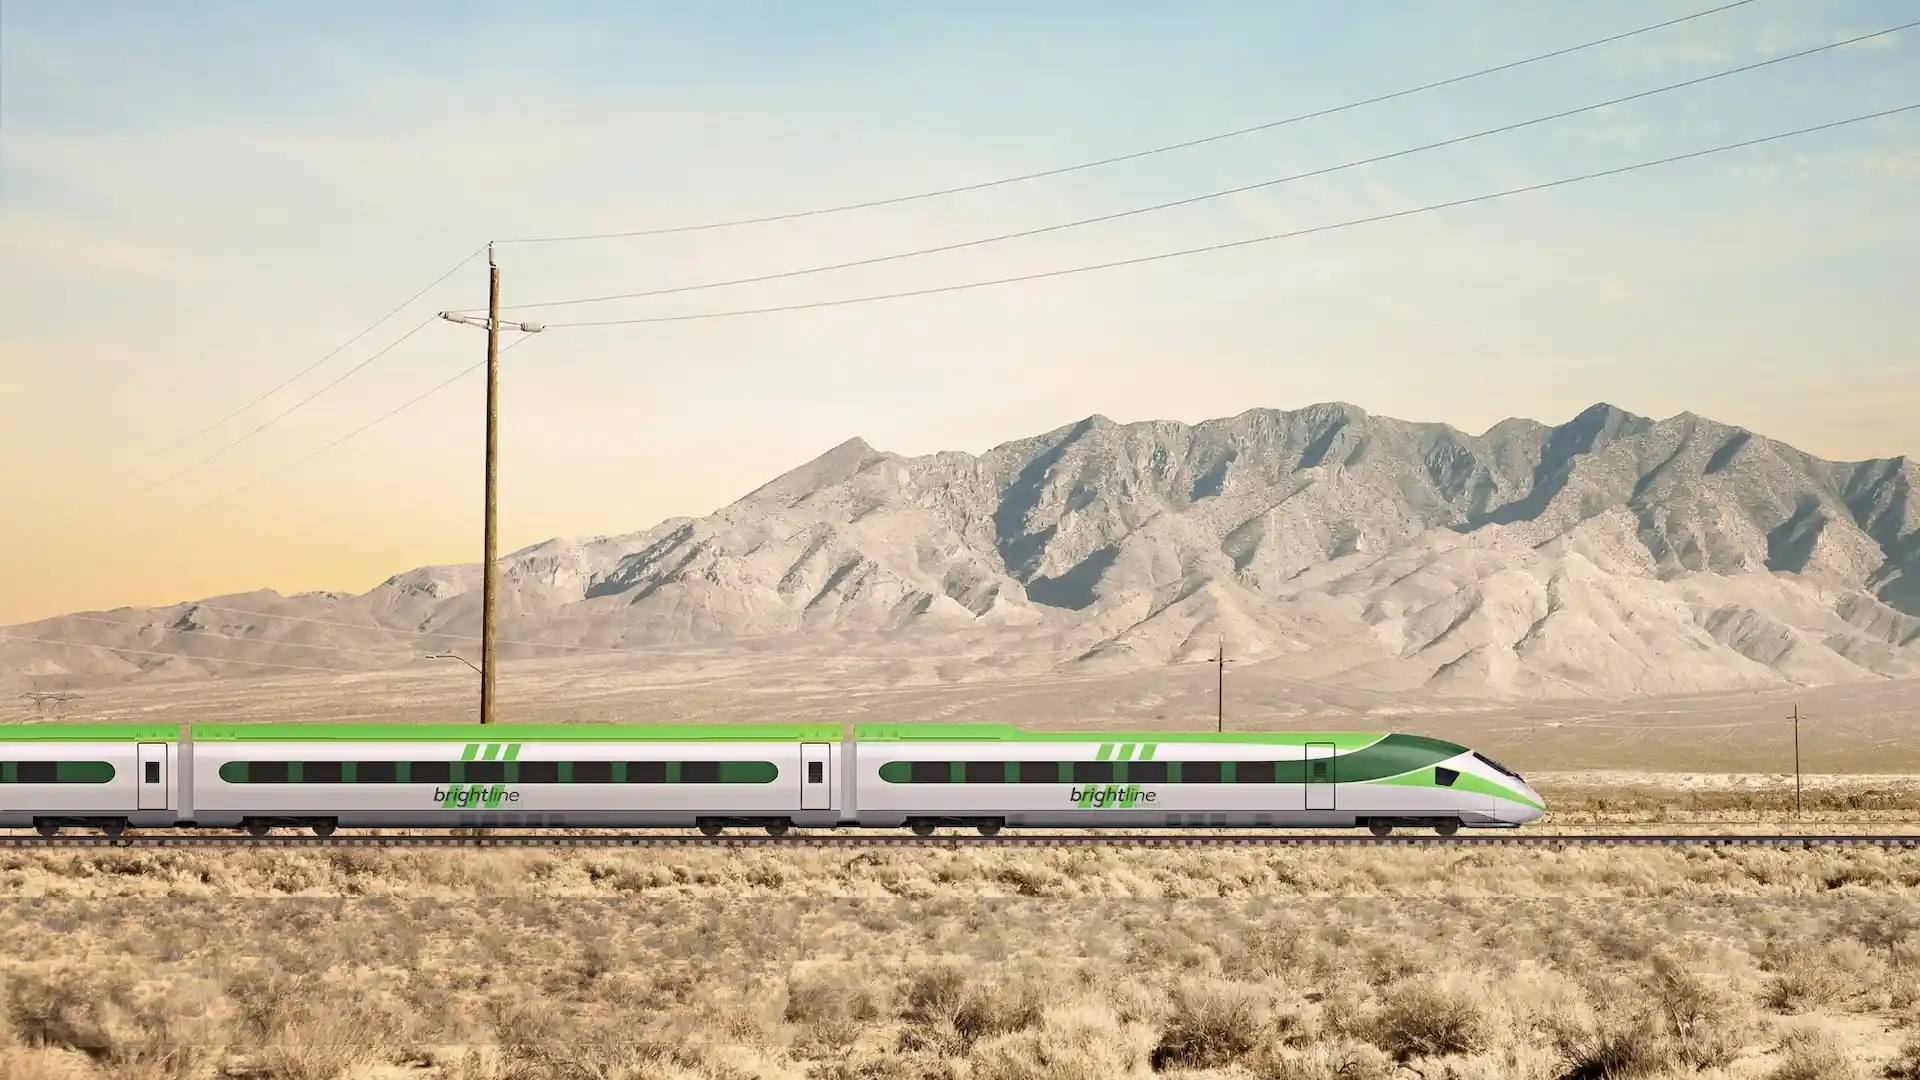 Los 3 nuevos trenes rápidos en Estados Unidos: California, Texas y más